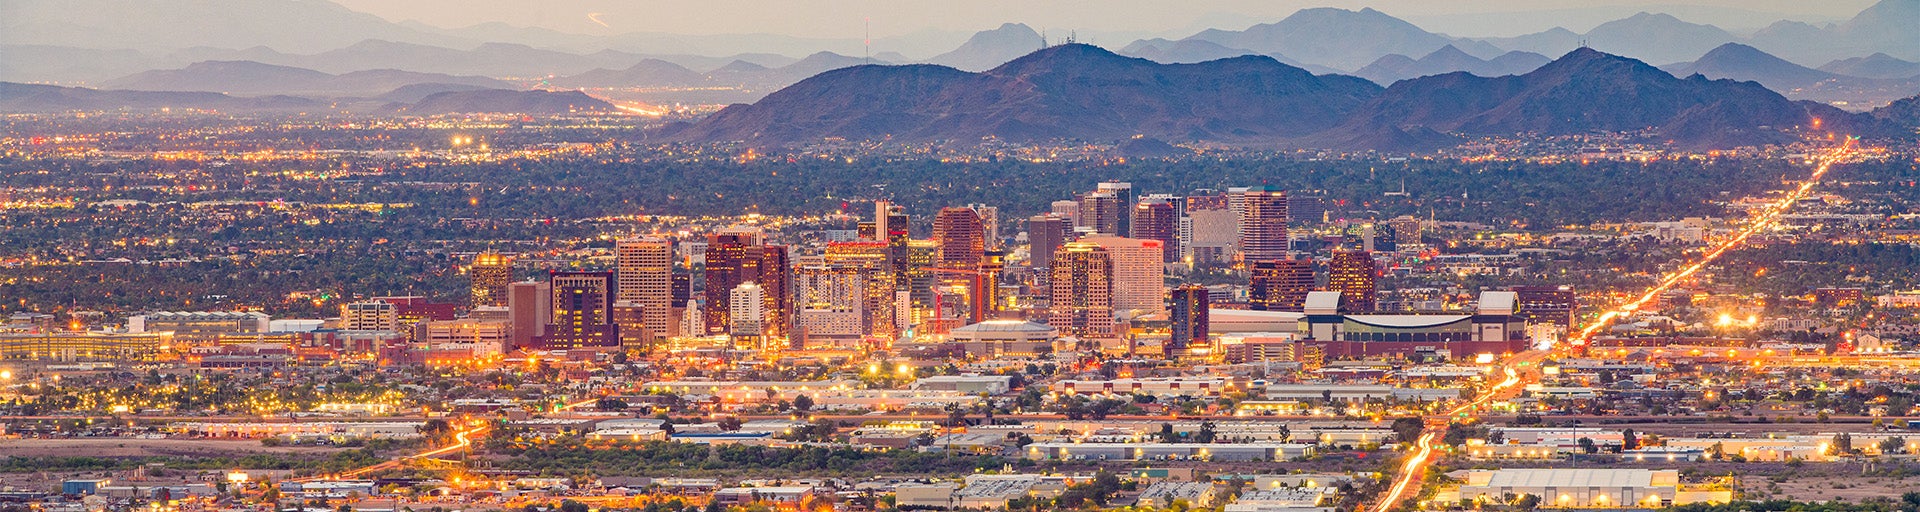 Arial view of Phoenix, Arizona